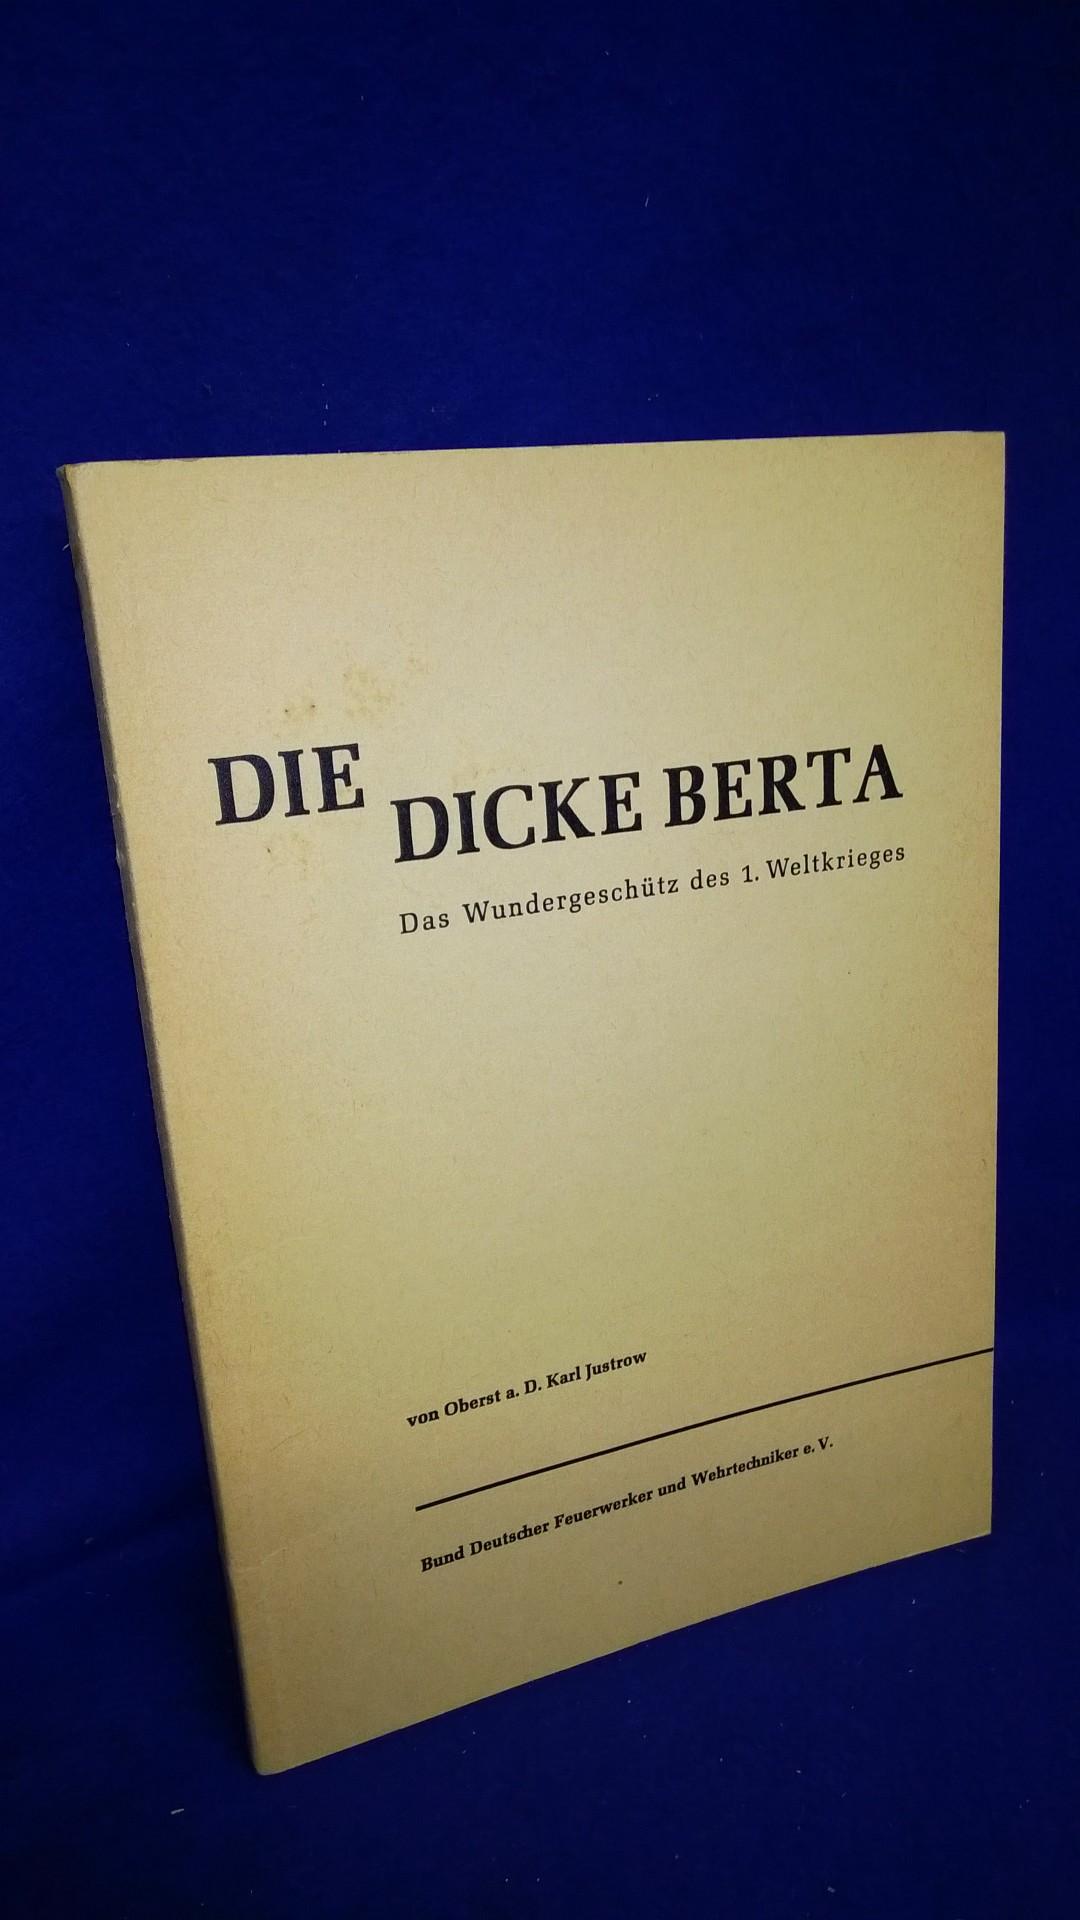 Die Dicke Berta - Das Wundergeschütz des 1. Weltkrieges.